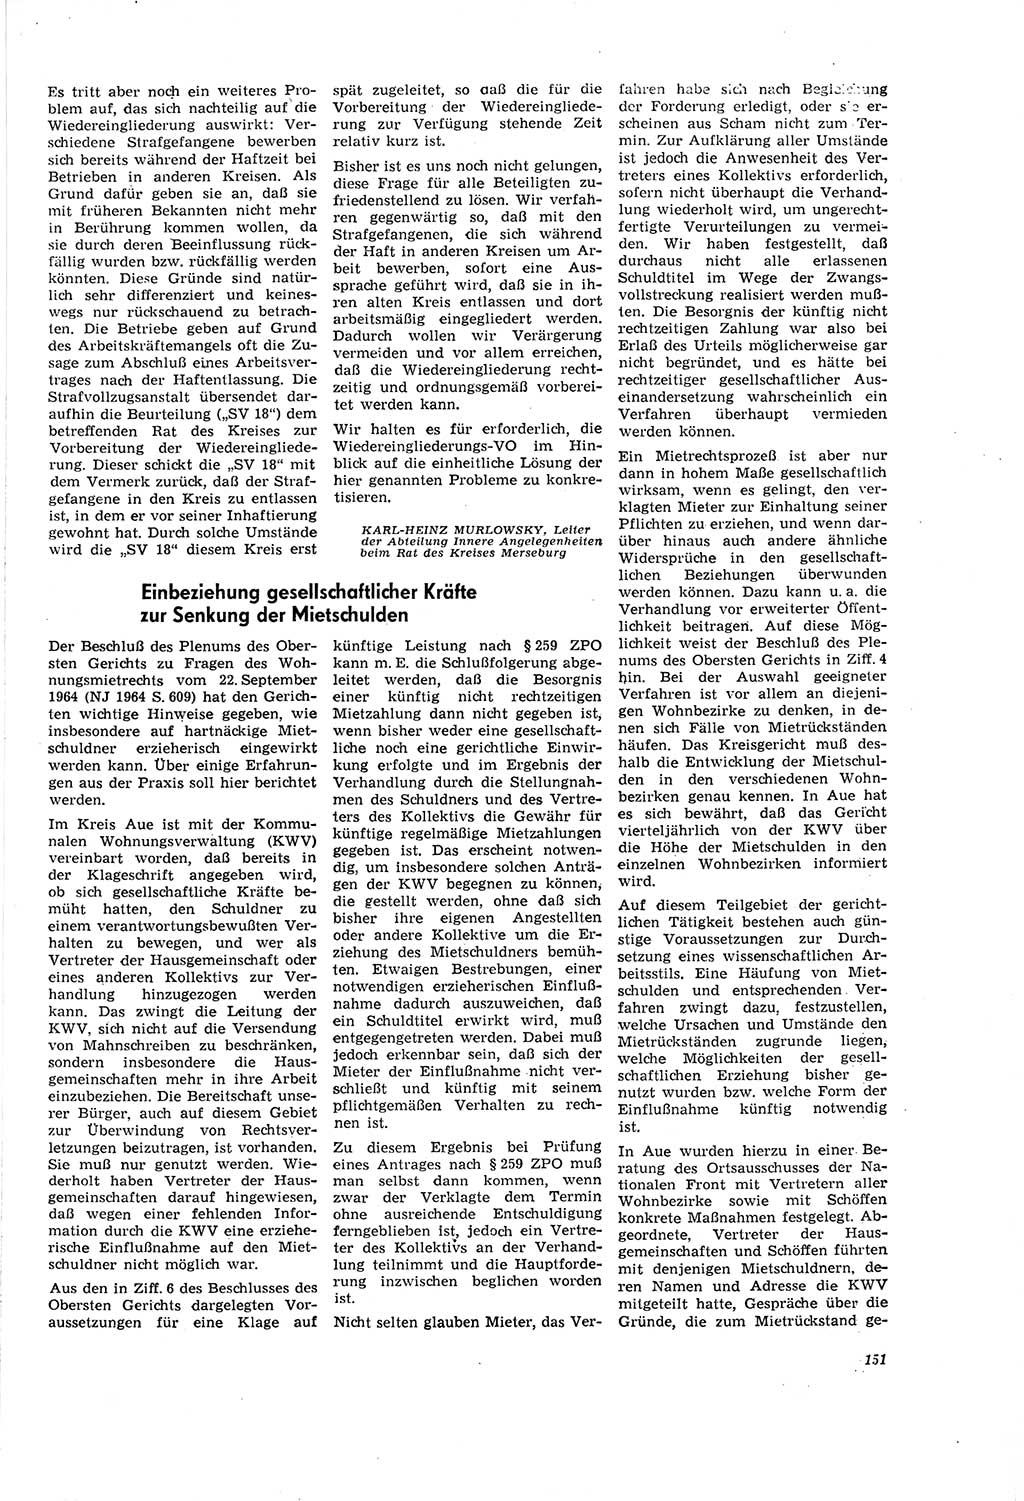 Neue Justiz (NJ), Zeitschrift für Recht und Rechtswissenschaft [Deutsche Demokratische Republik (DDR)], 20. Jahrgang 1966, Seite 151 (NJ DDR 1966, S. 151)